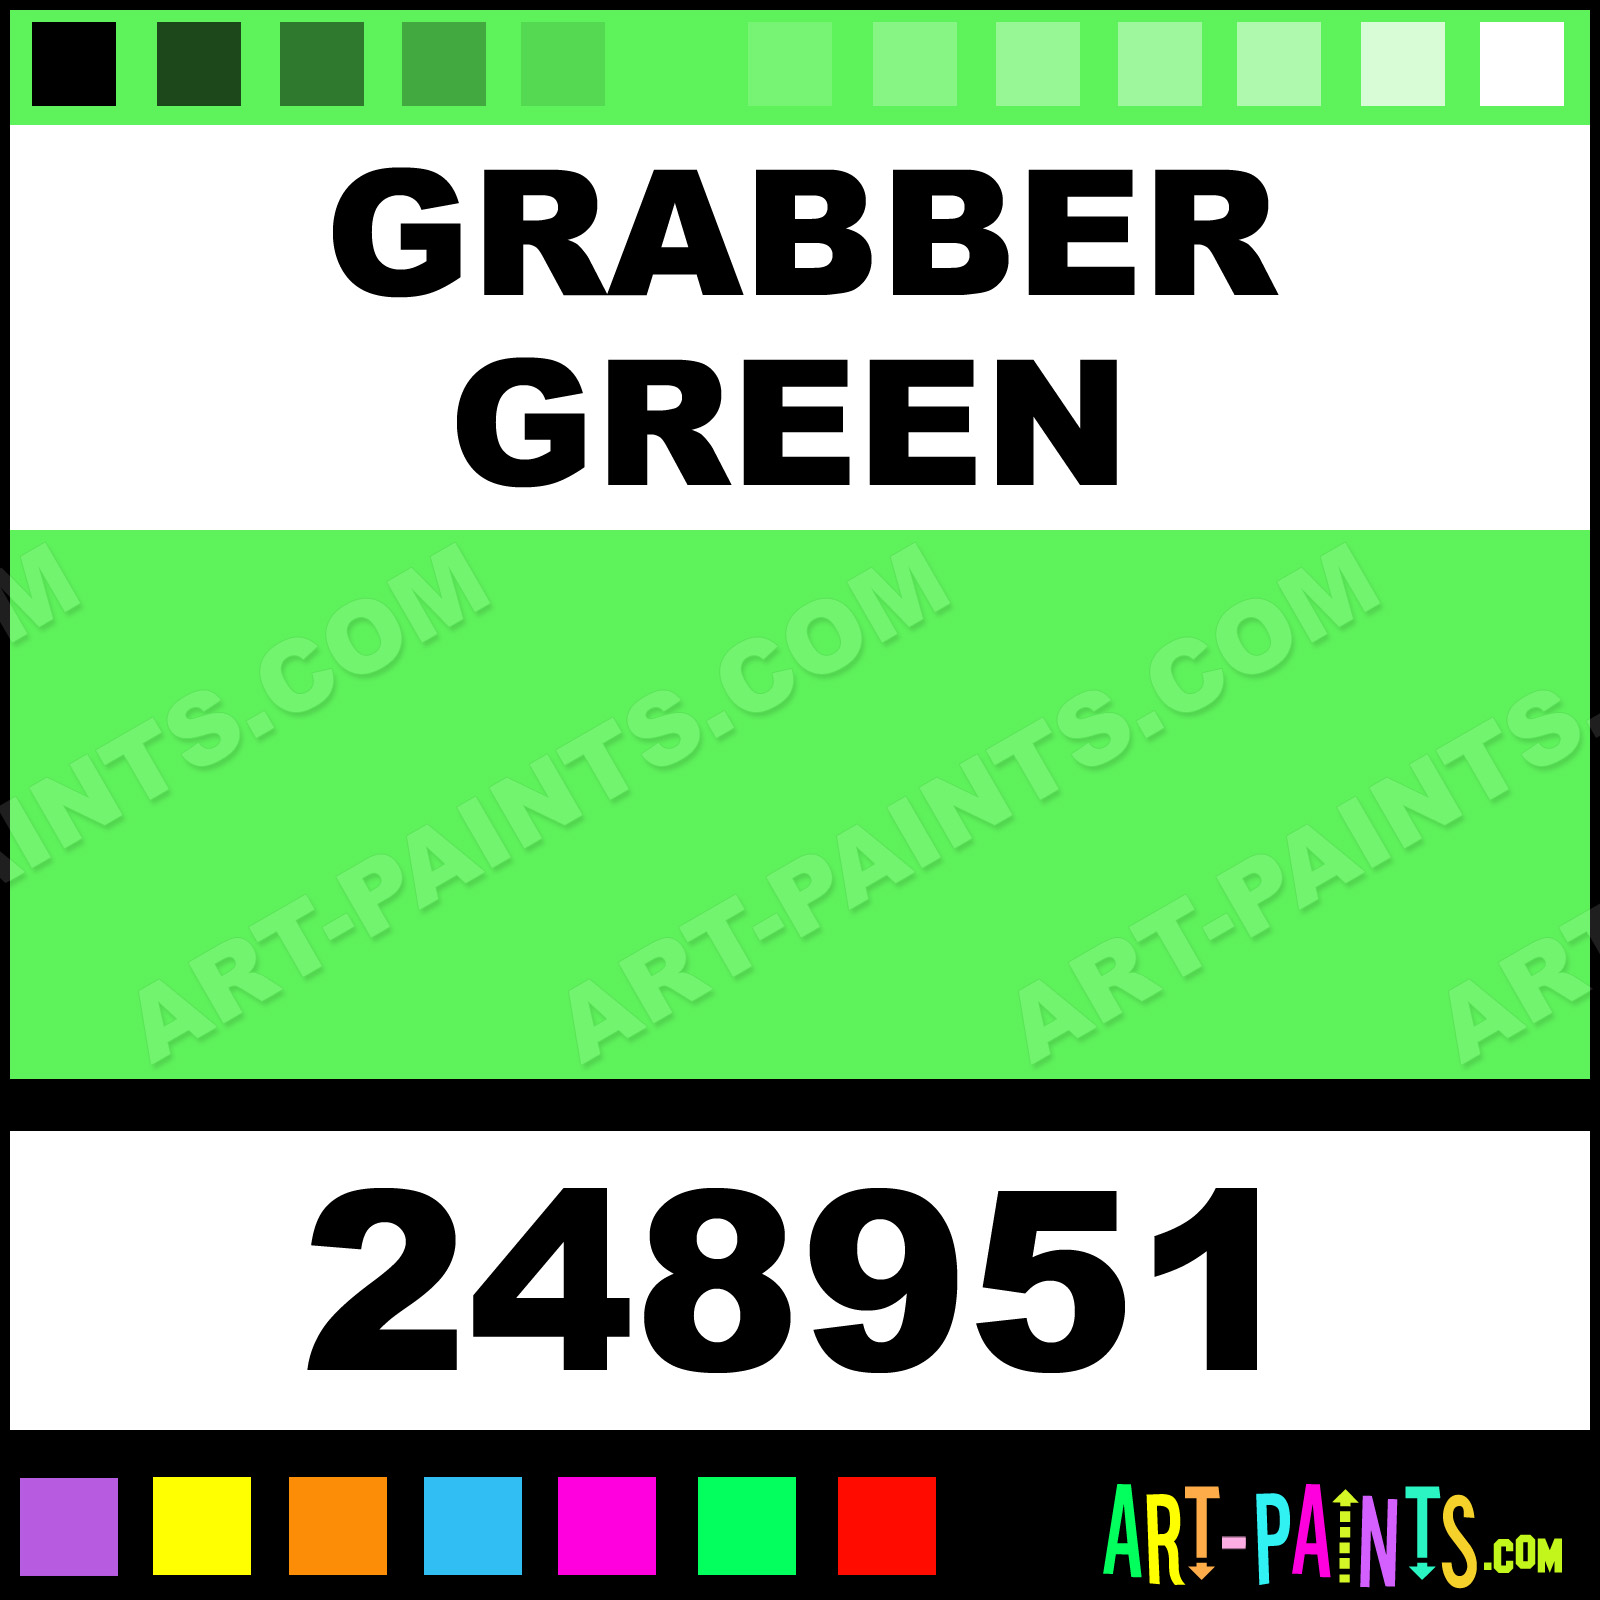 Grabber Green Engine Enamel Enamel Paints - 248951 - Grabber Green Paint,  Grabber Green Color, Rust-Oleum Engine Enamel Paint, 5DF25A 